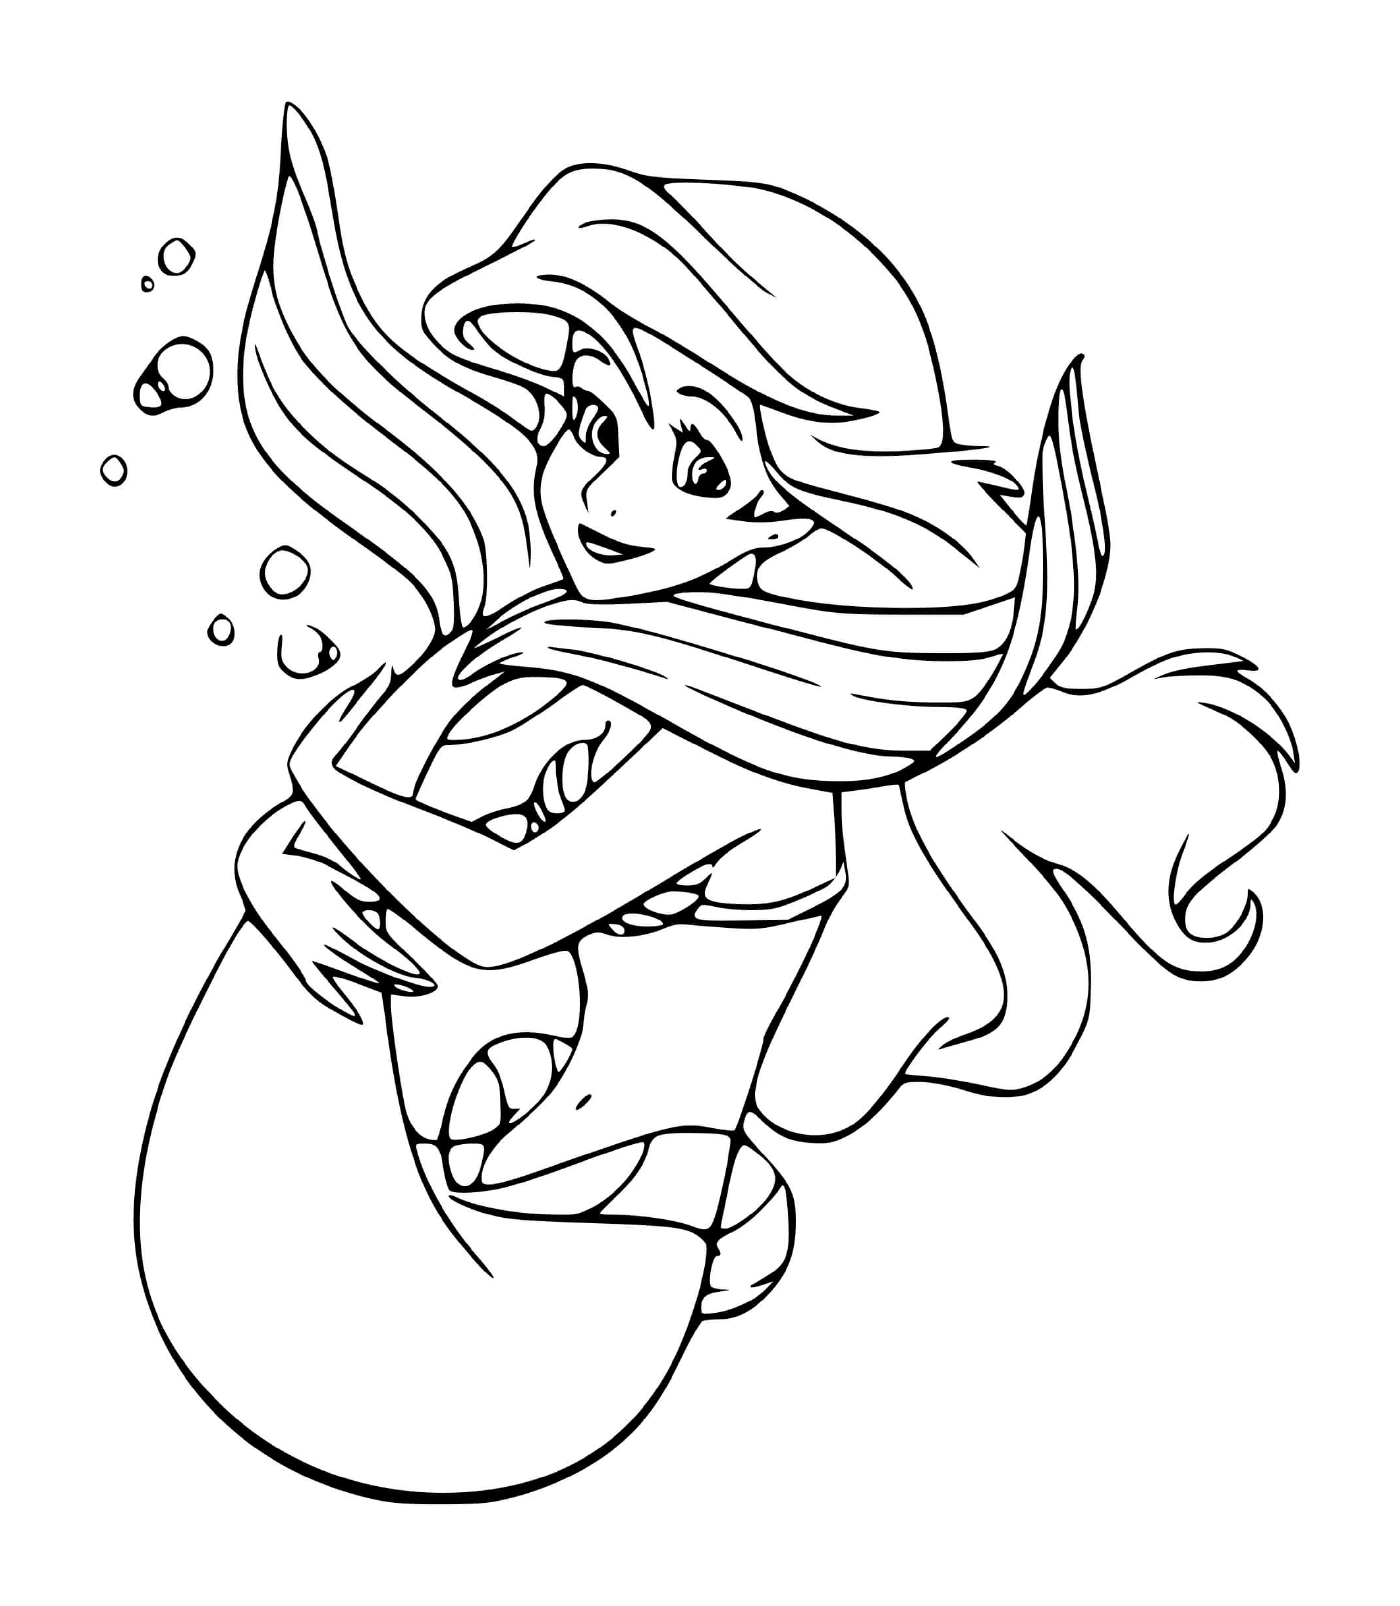  Ariel, una sirena aventurera y curiosa del mundo 